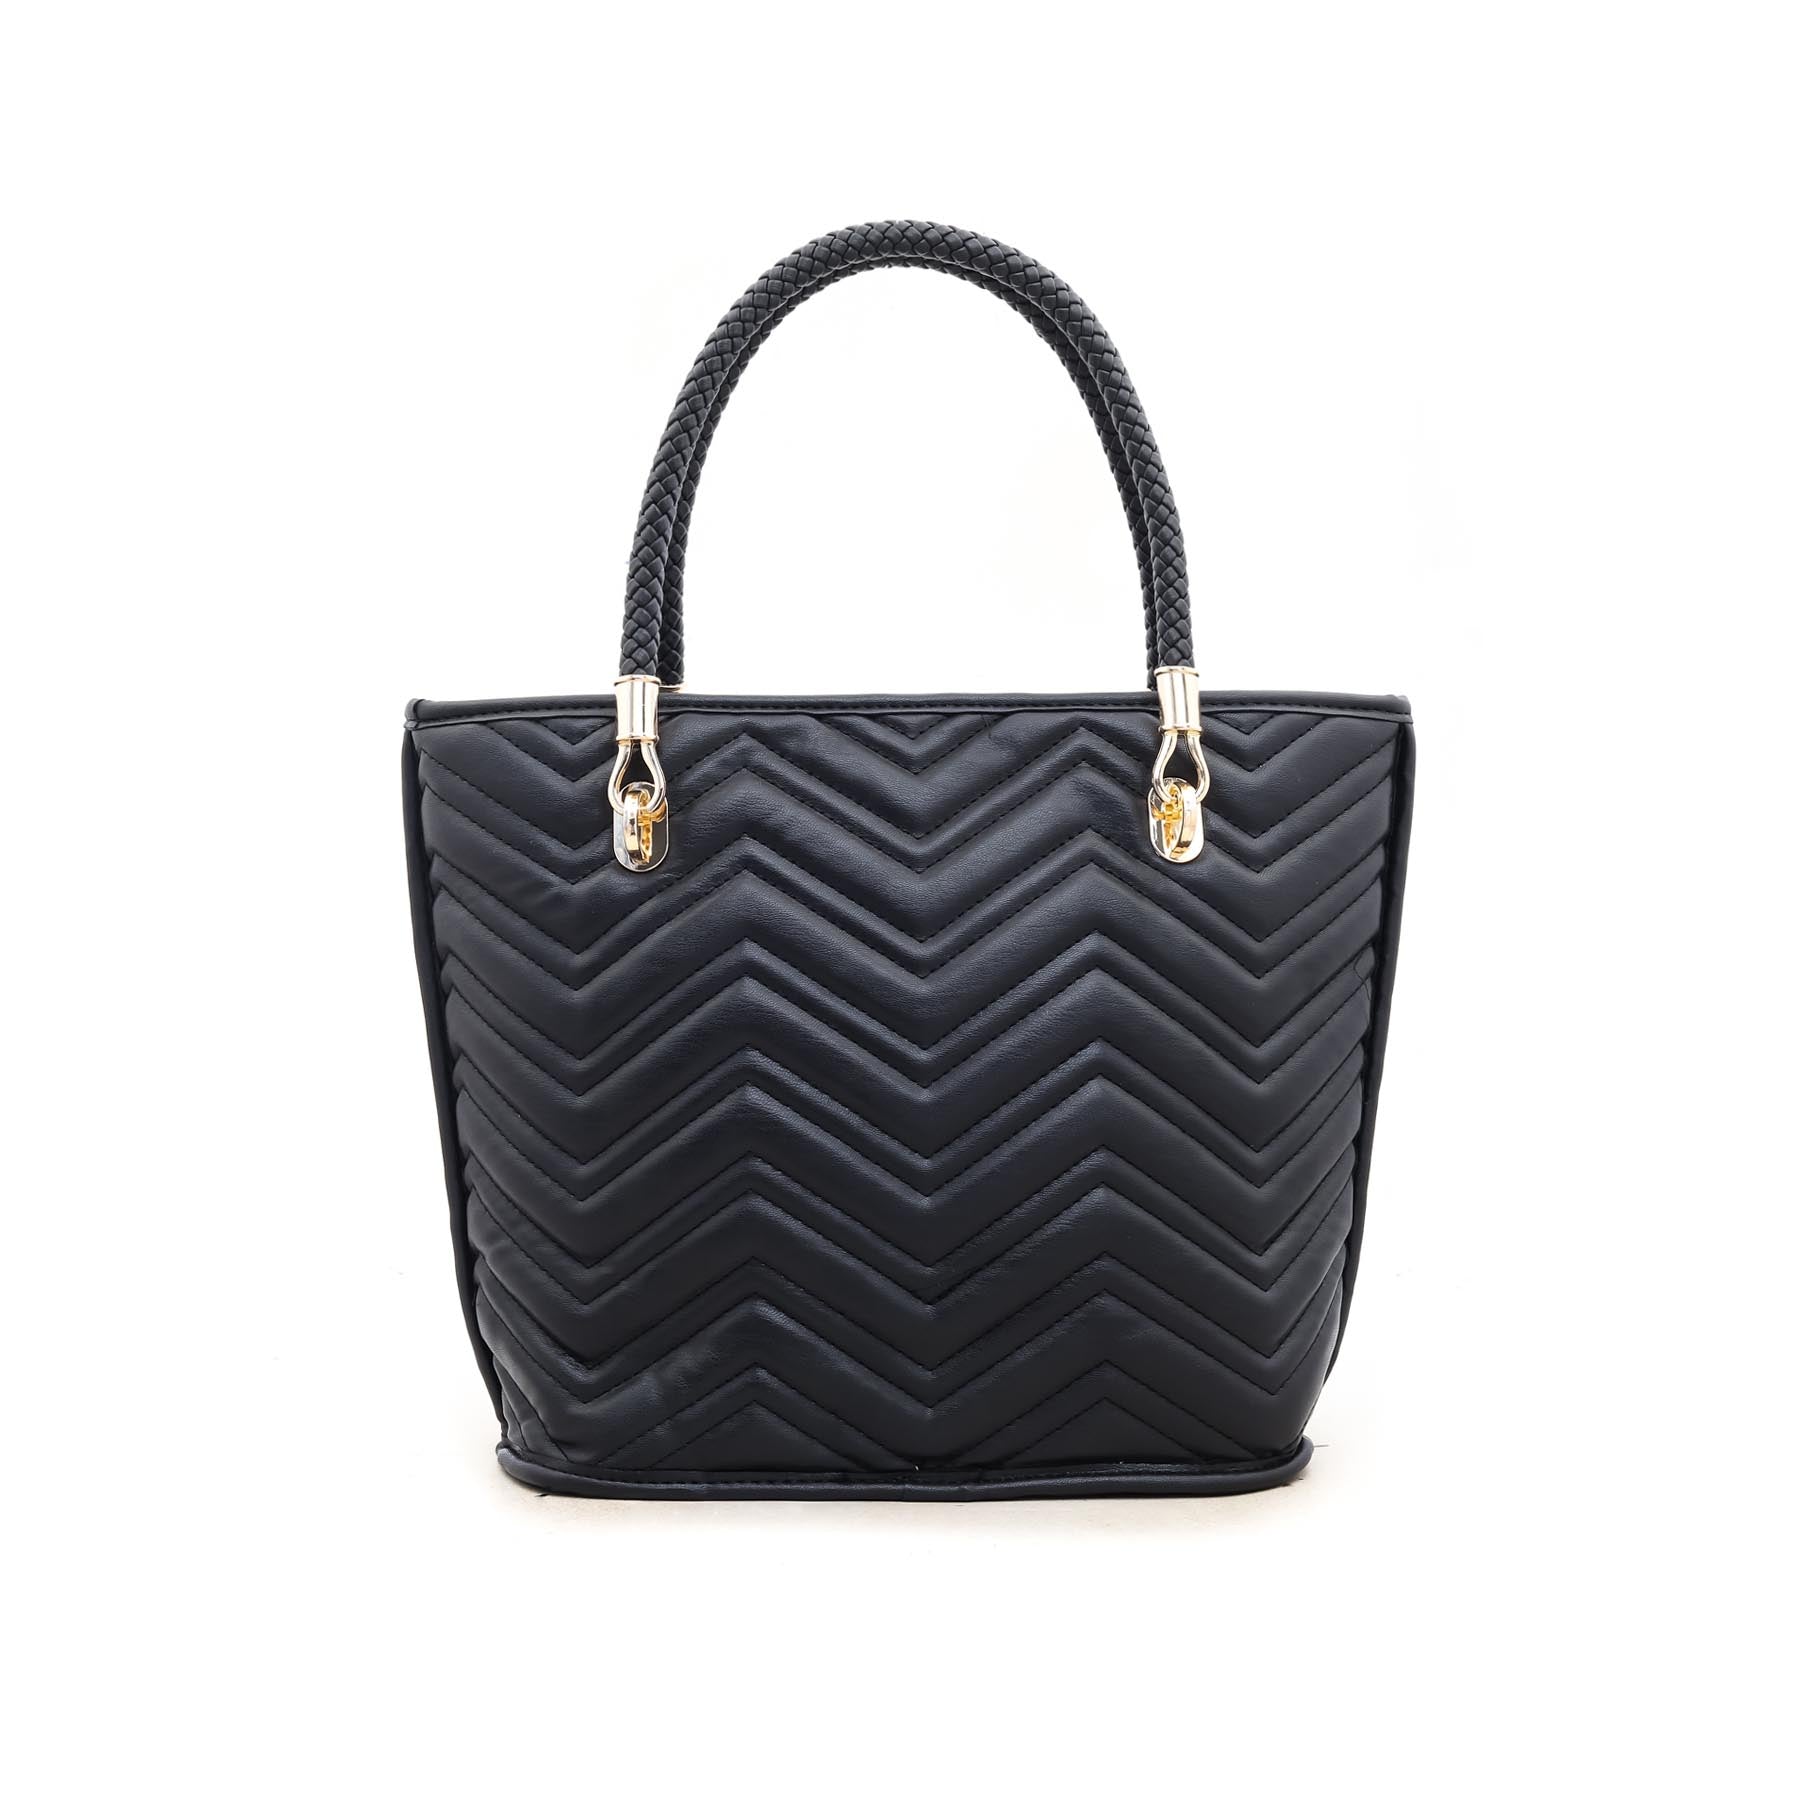 Black Formal Hand Bag P35016